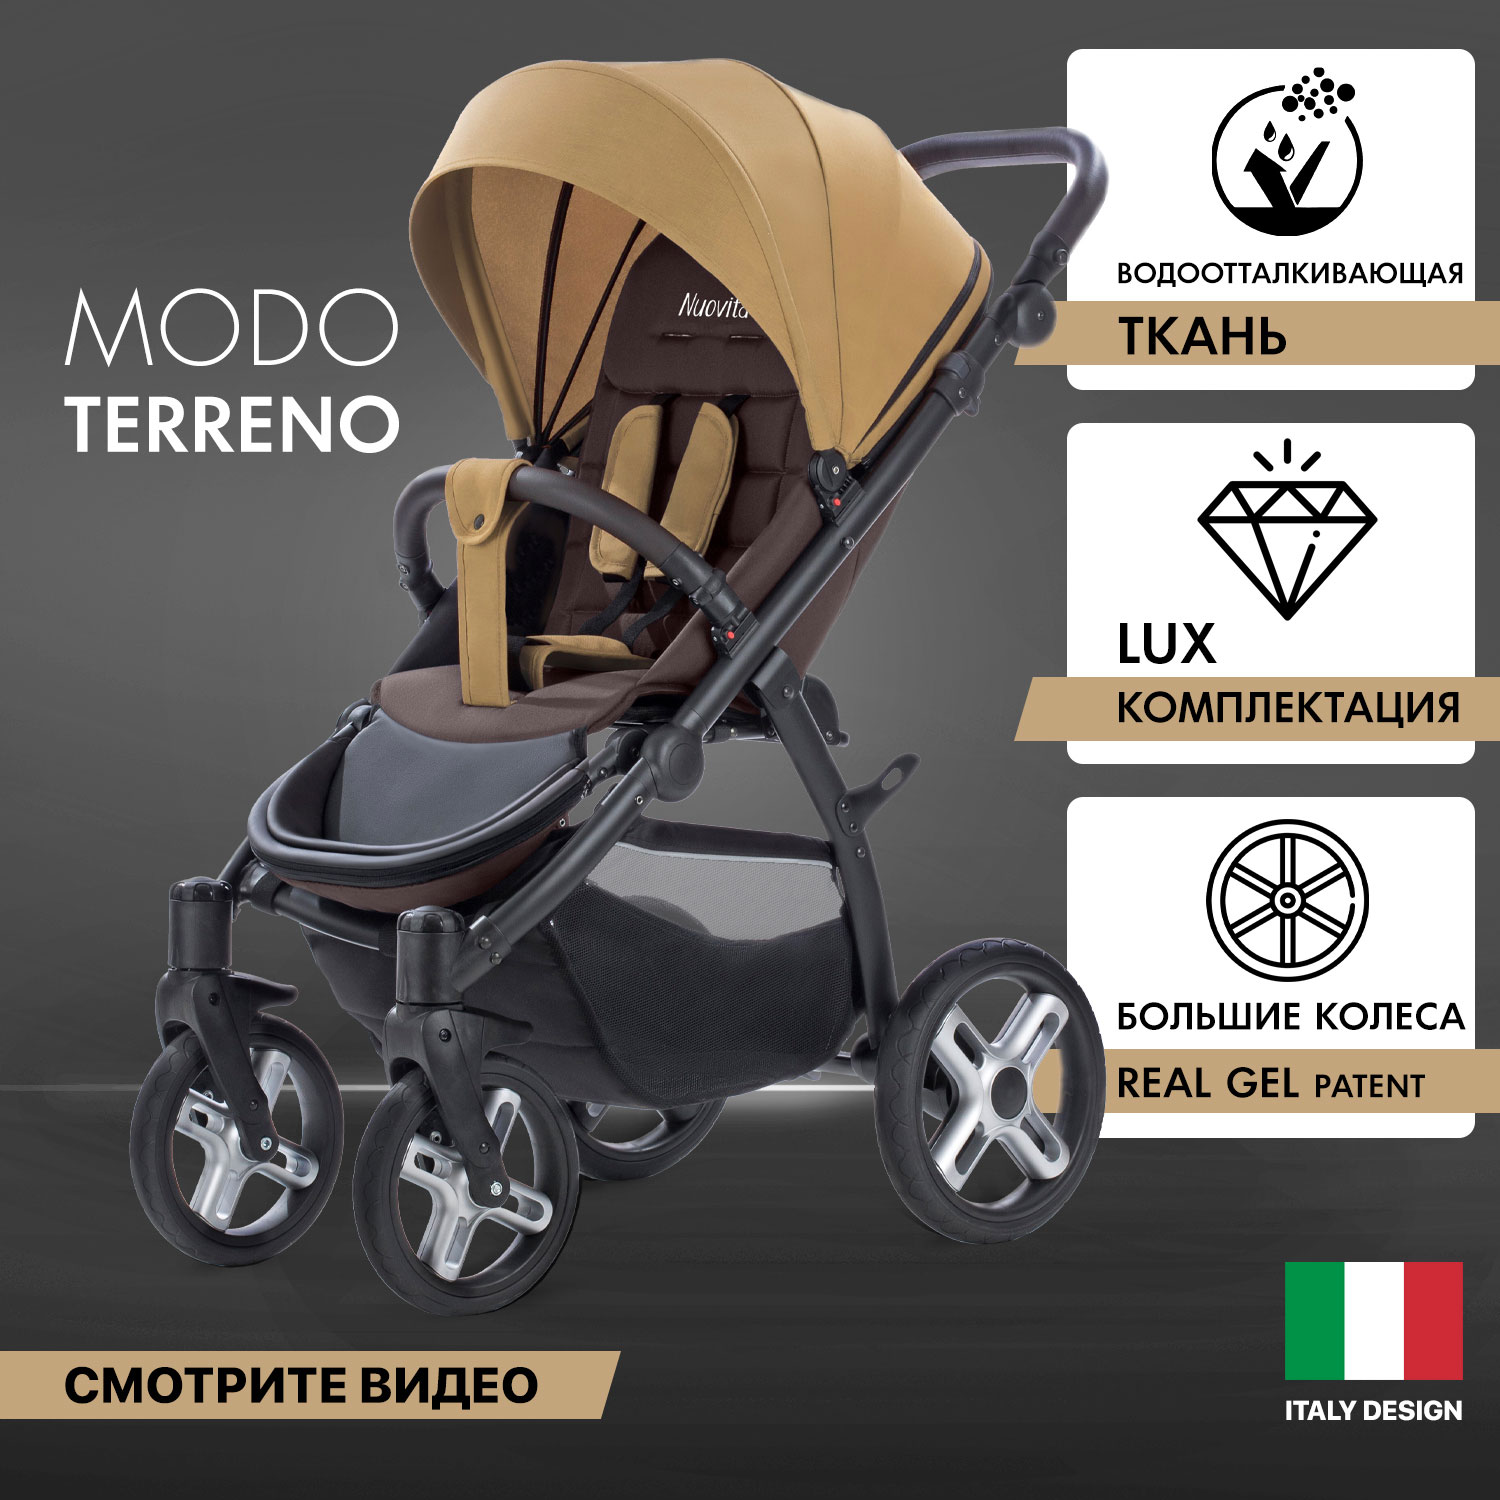 Прогулочная коляска Nuovita Modo Terreno Beige Marrone/Бежево-коричневый коляска трансформер 2 в 1 nuovita diamante marrone коричневый